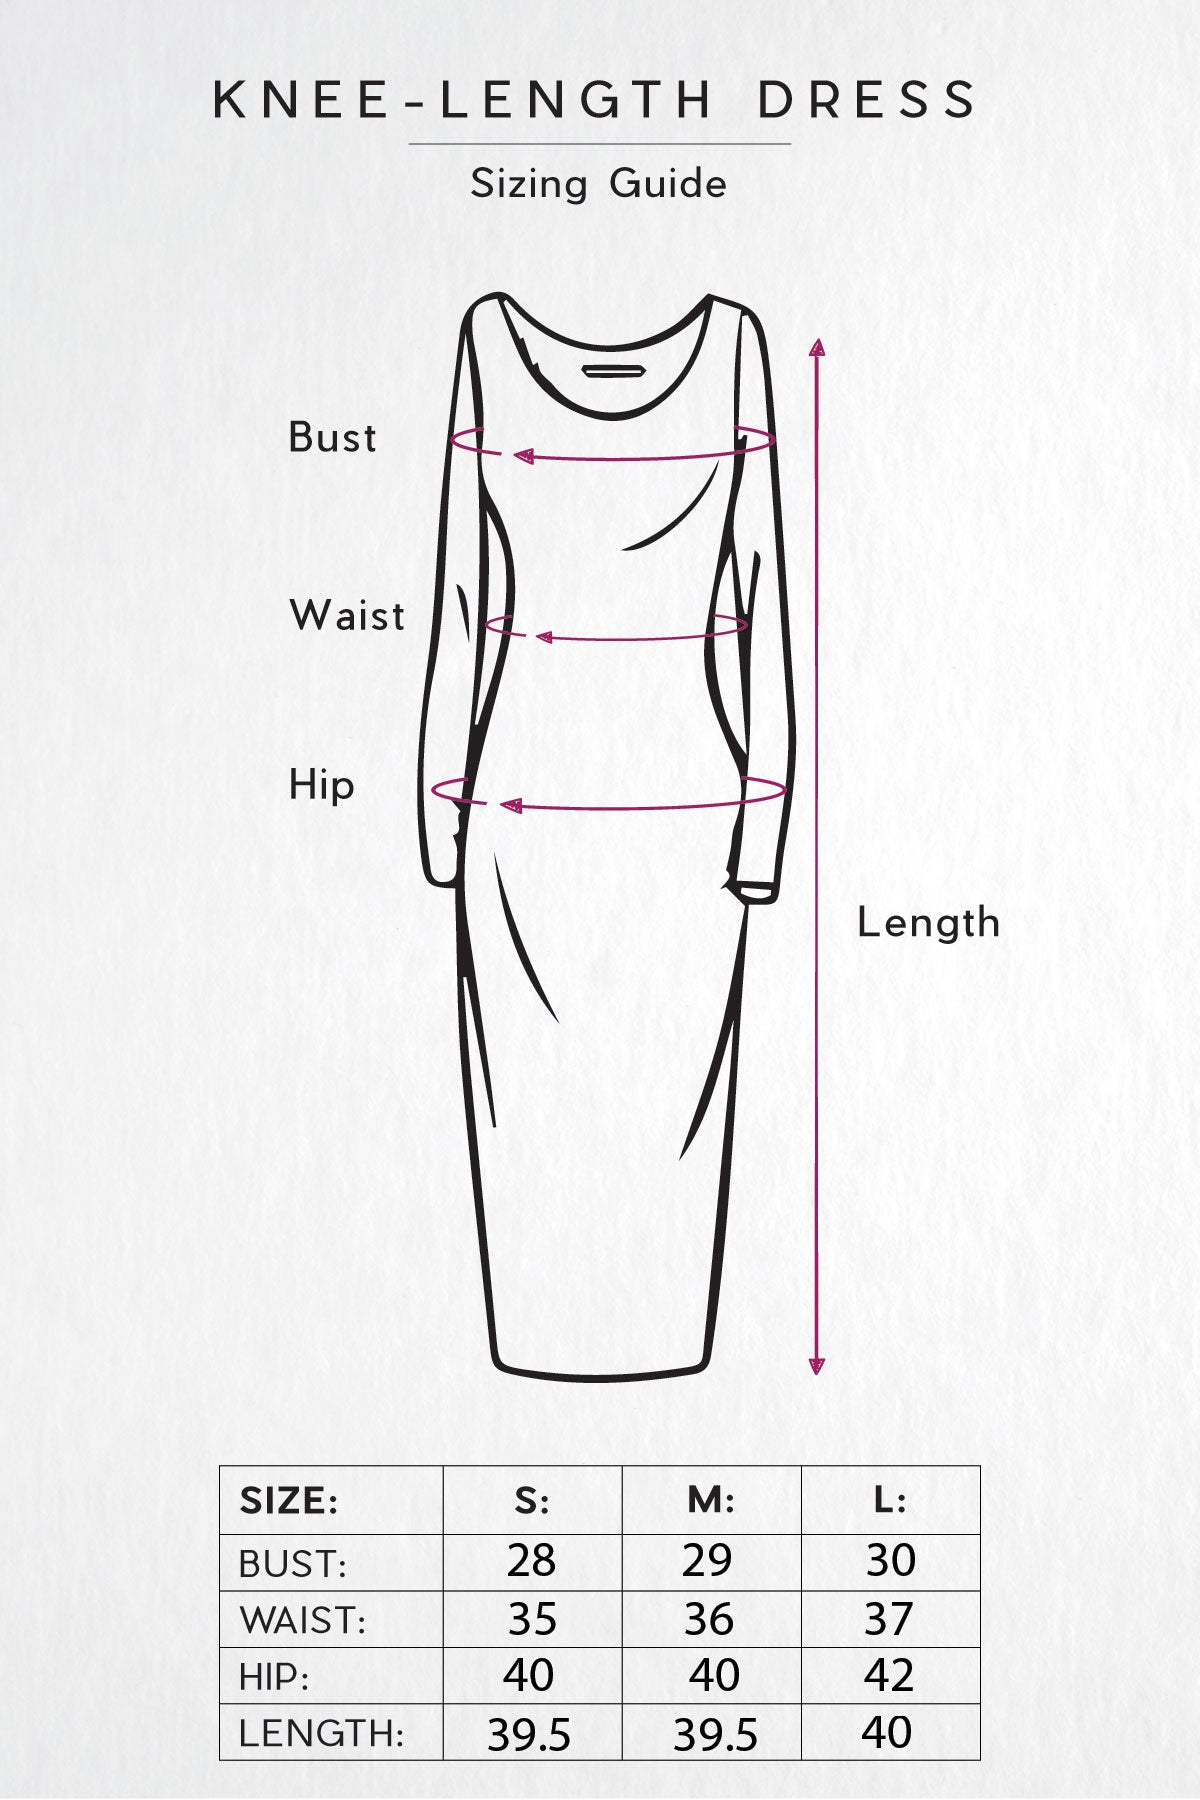 Keep the Vibe Striped Knee-Length Dress